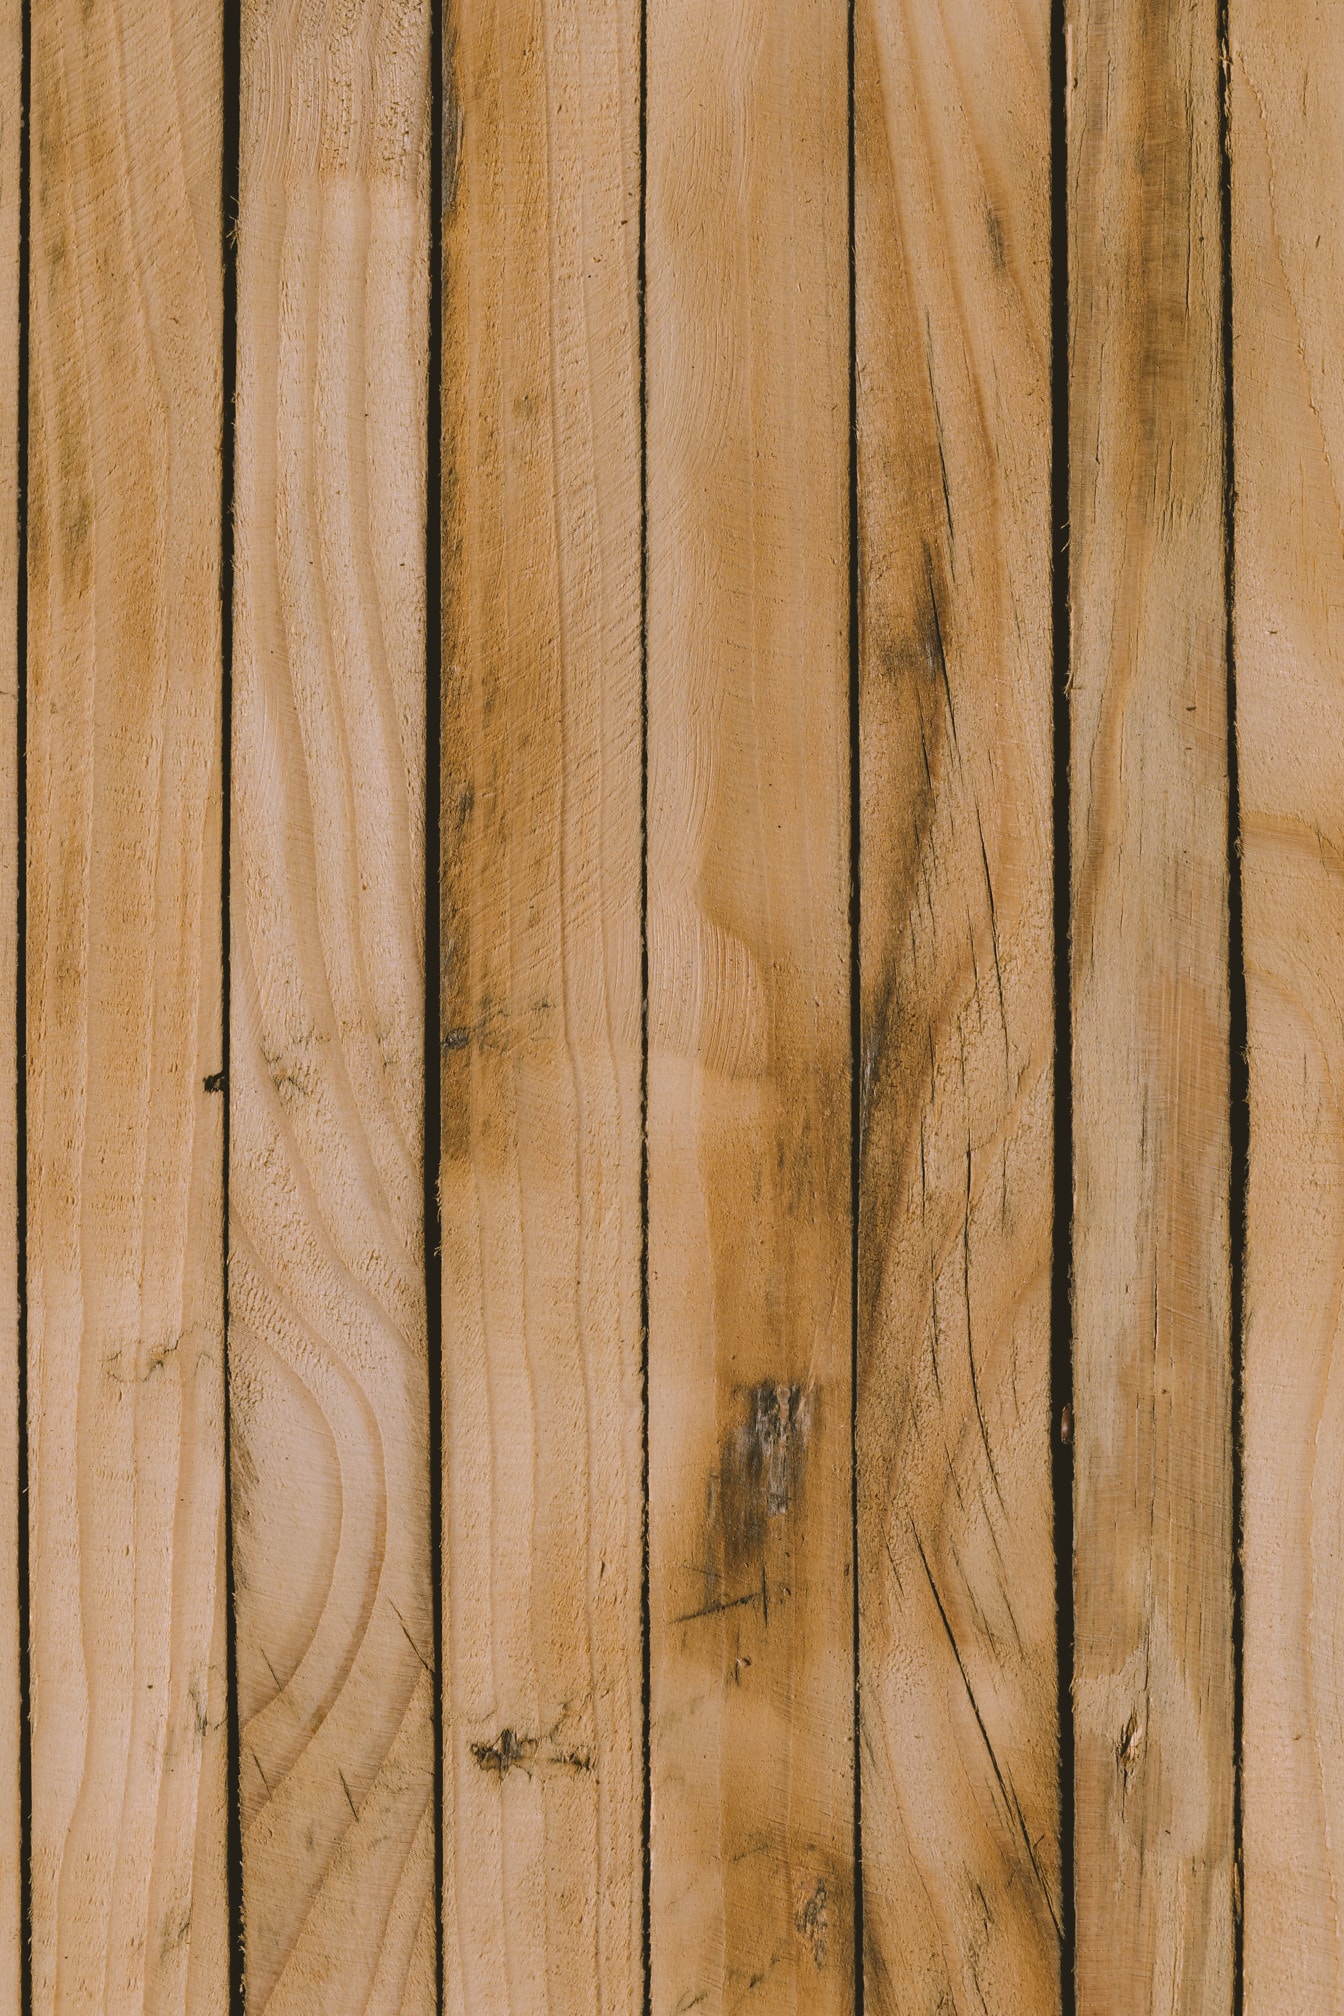 Tavole verticali rustiche in legno duro texture marrone chiaro